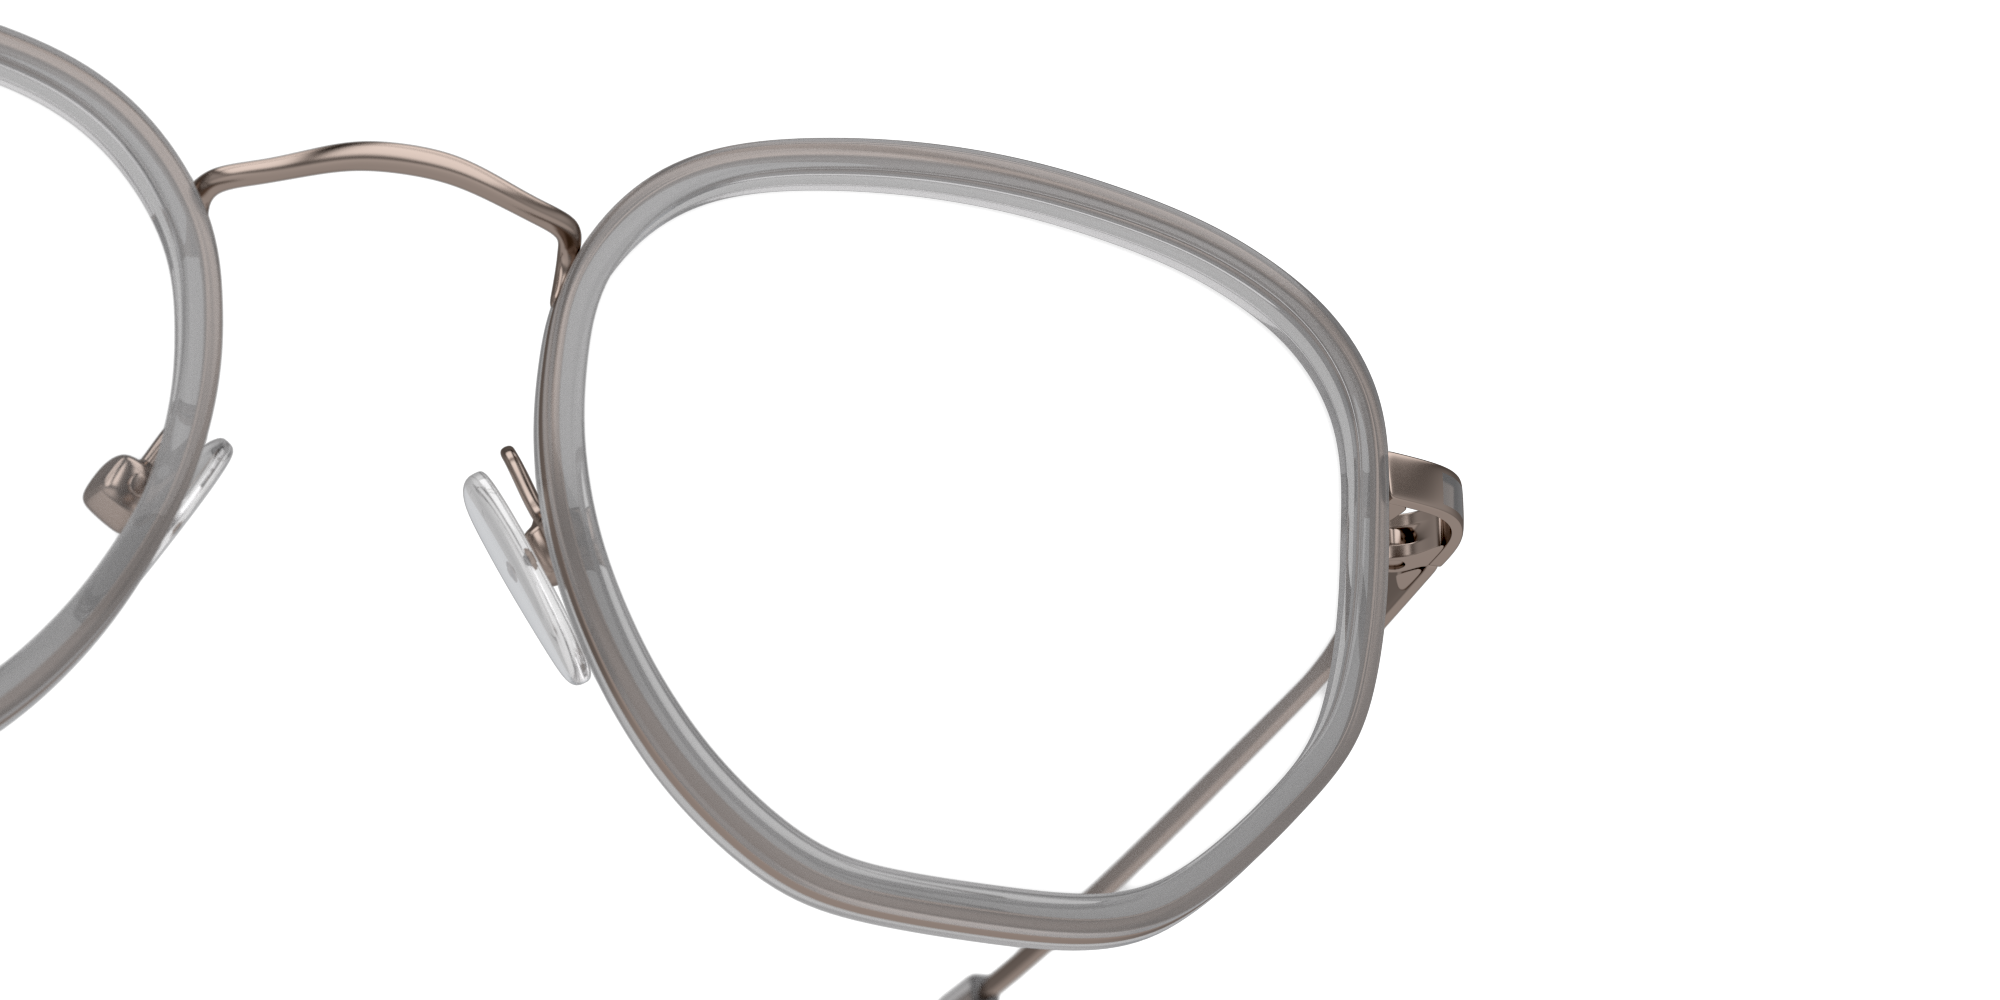 Detail01 Unofficial UNOM0164 (CS00) Glasses Transparent / Blue